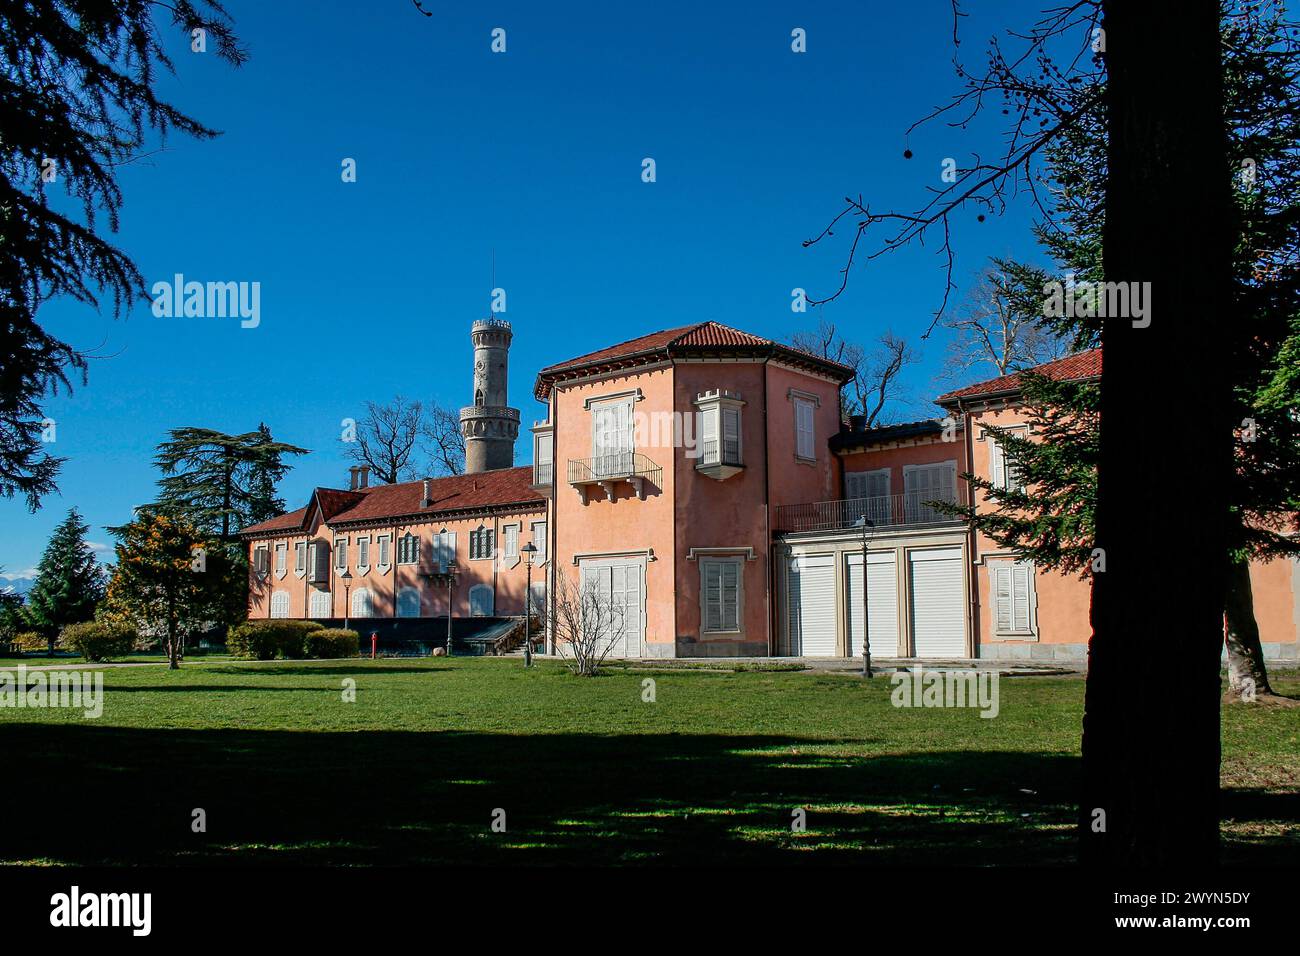 Varese, Lombardei, Italien. Villa Mirabello, auf dem Hügel Mirabello, im Zentrum von Varese gelegen, wurde im 18. Jahrhundert begonnen und in seiner heutigen Form vom Ingenieur Clericetti (1843) definiert. Seit 1949 ist es Sitz der Bürgermuseen von Varese. Stockfoto